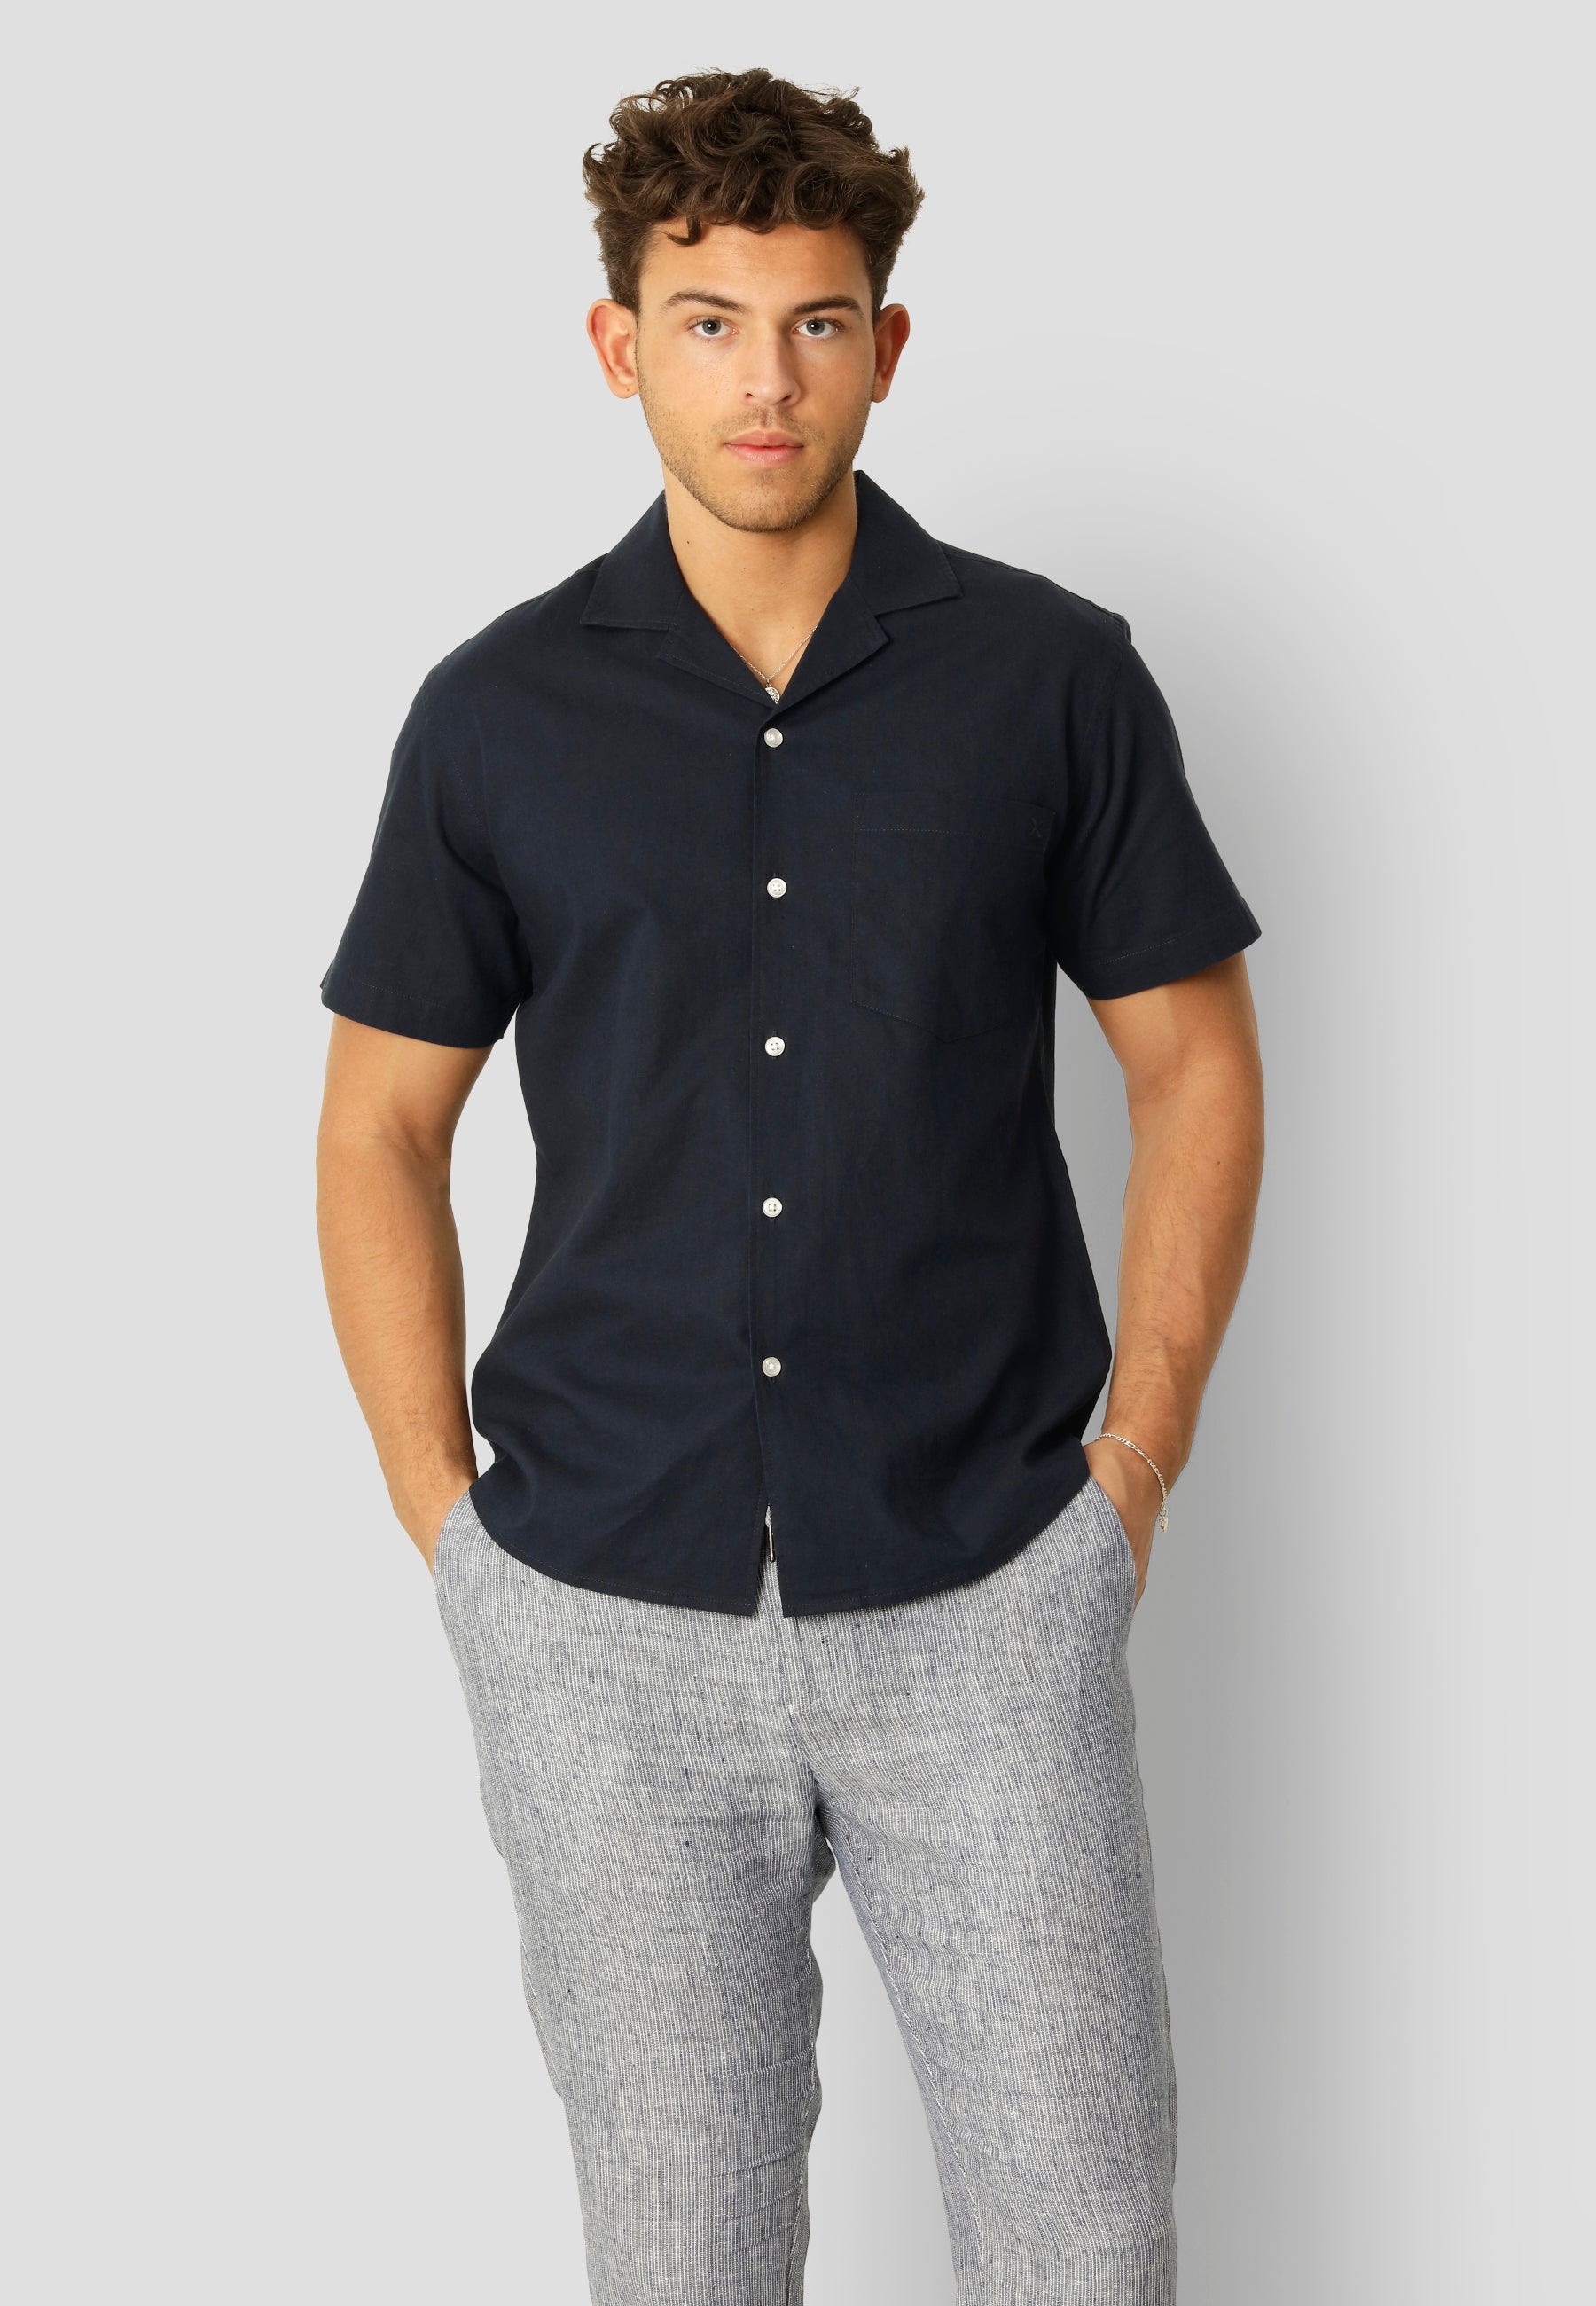 Bowling Cotton Linen Shirt S/S - Navy